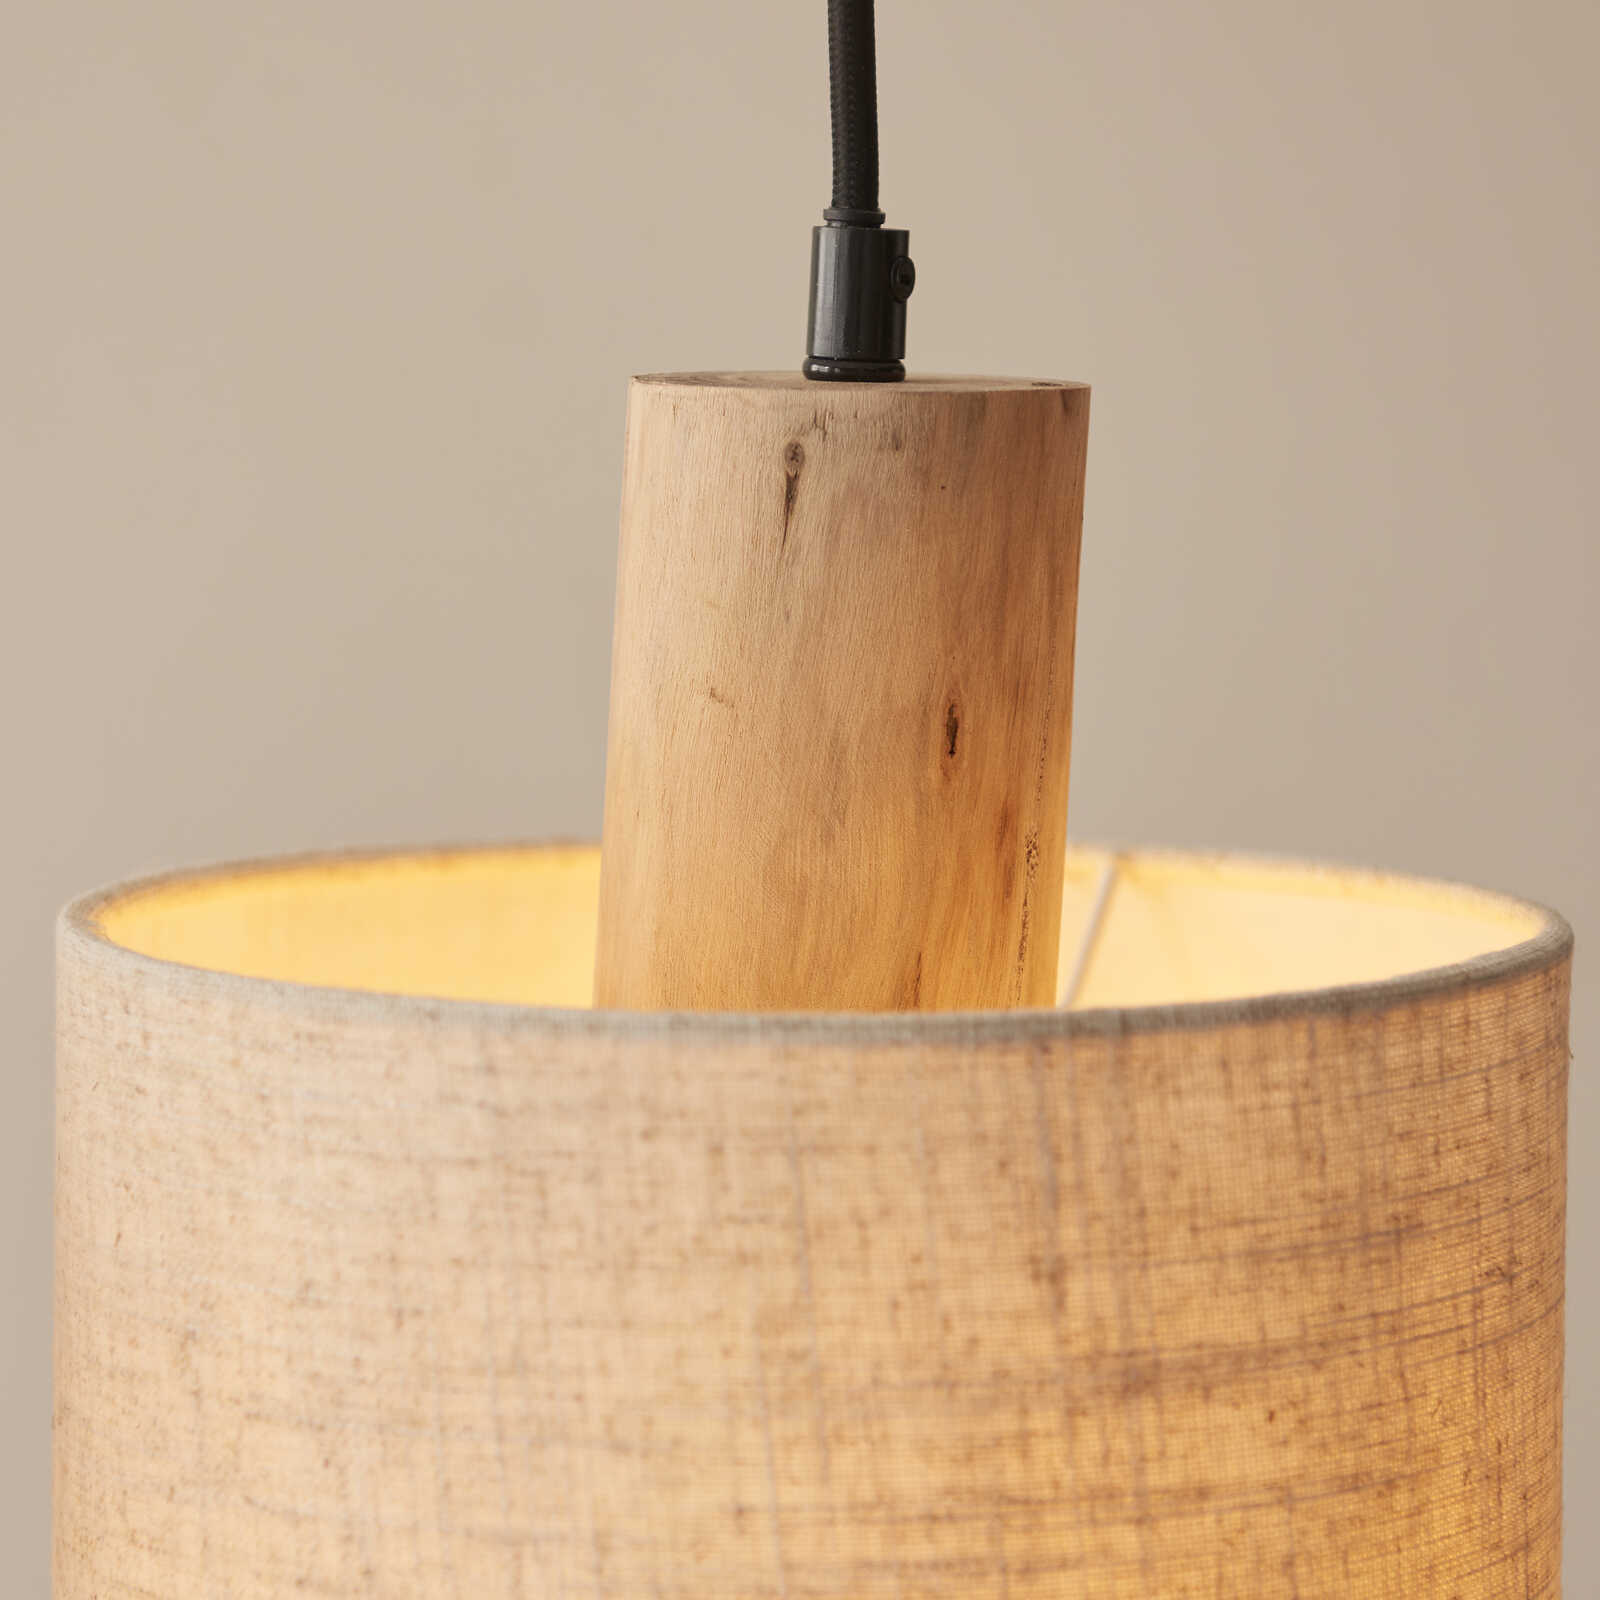             Lámpara colgante de madera - Manuel - Marrón
        